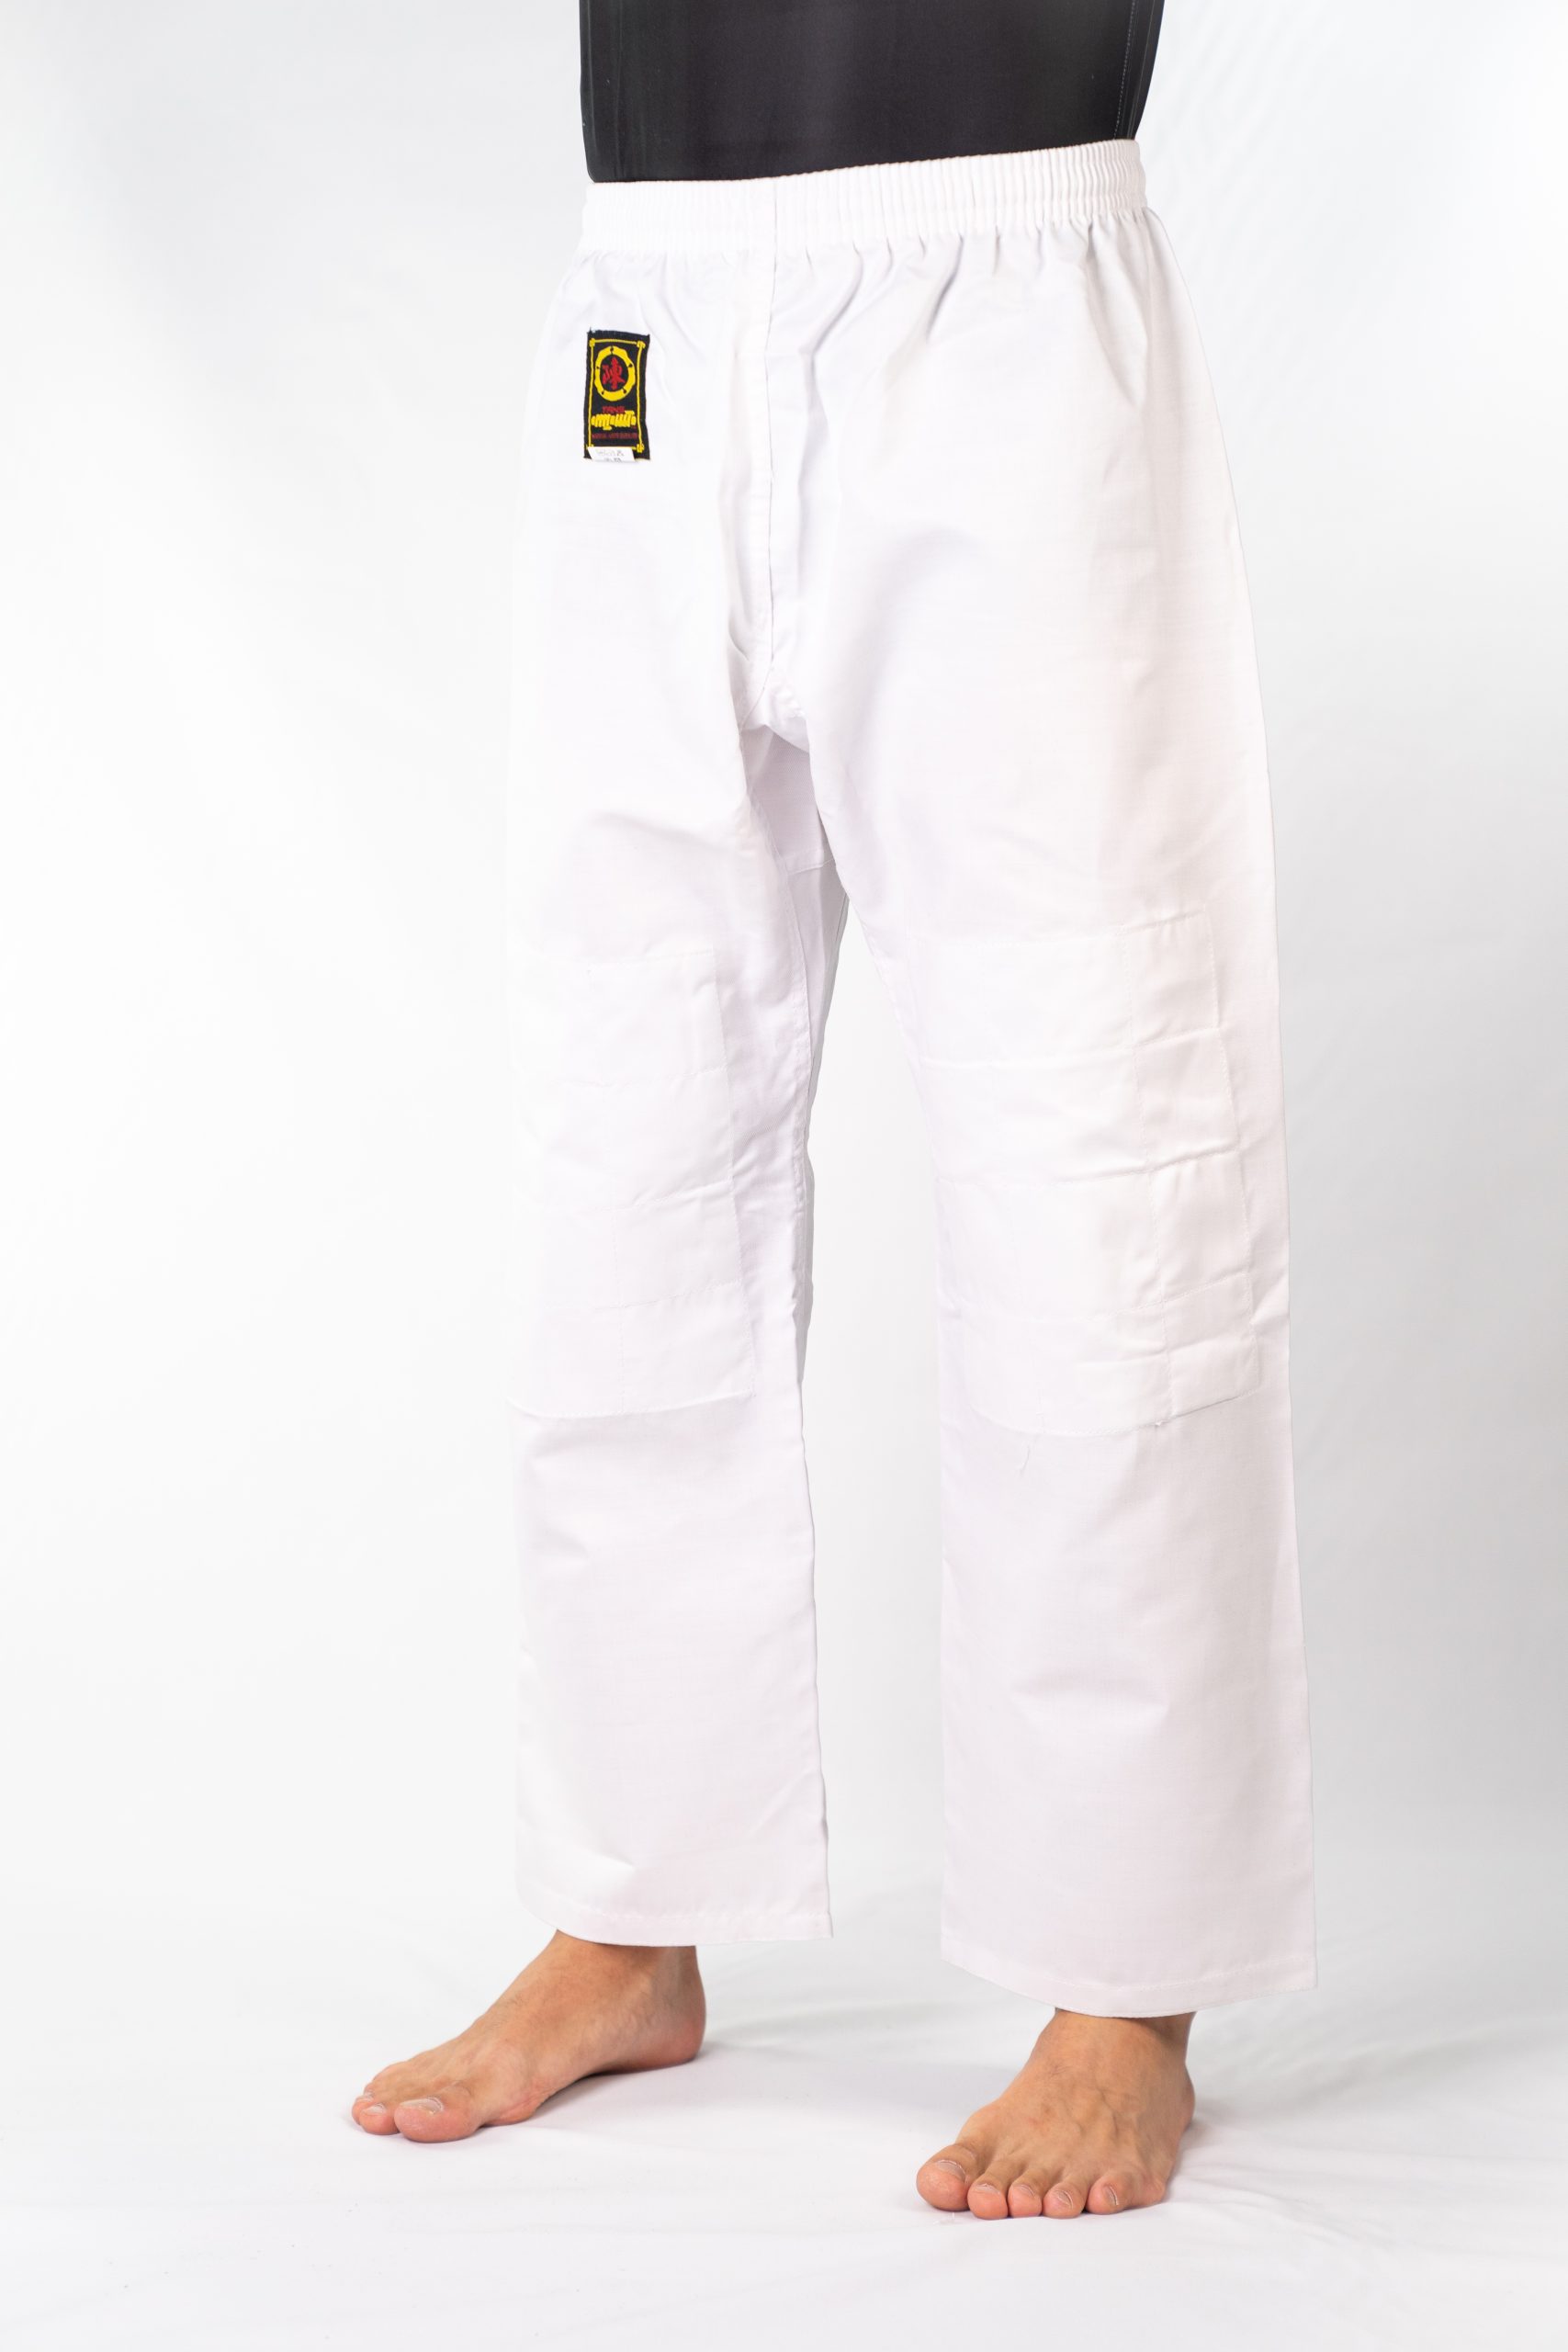 Judo Pants / Aikido Pants - Tans Martial Arts Supplier